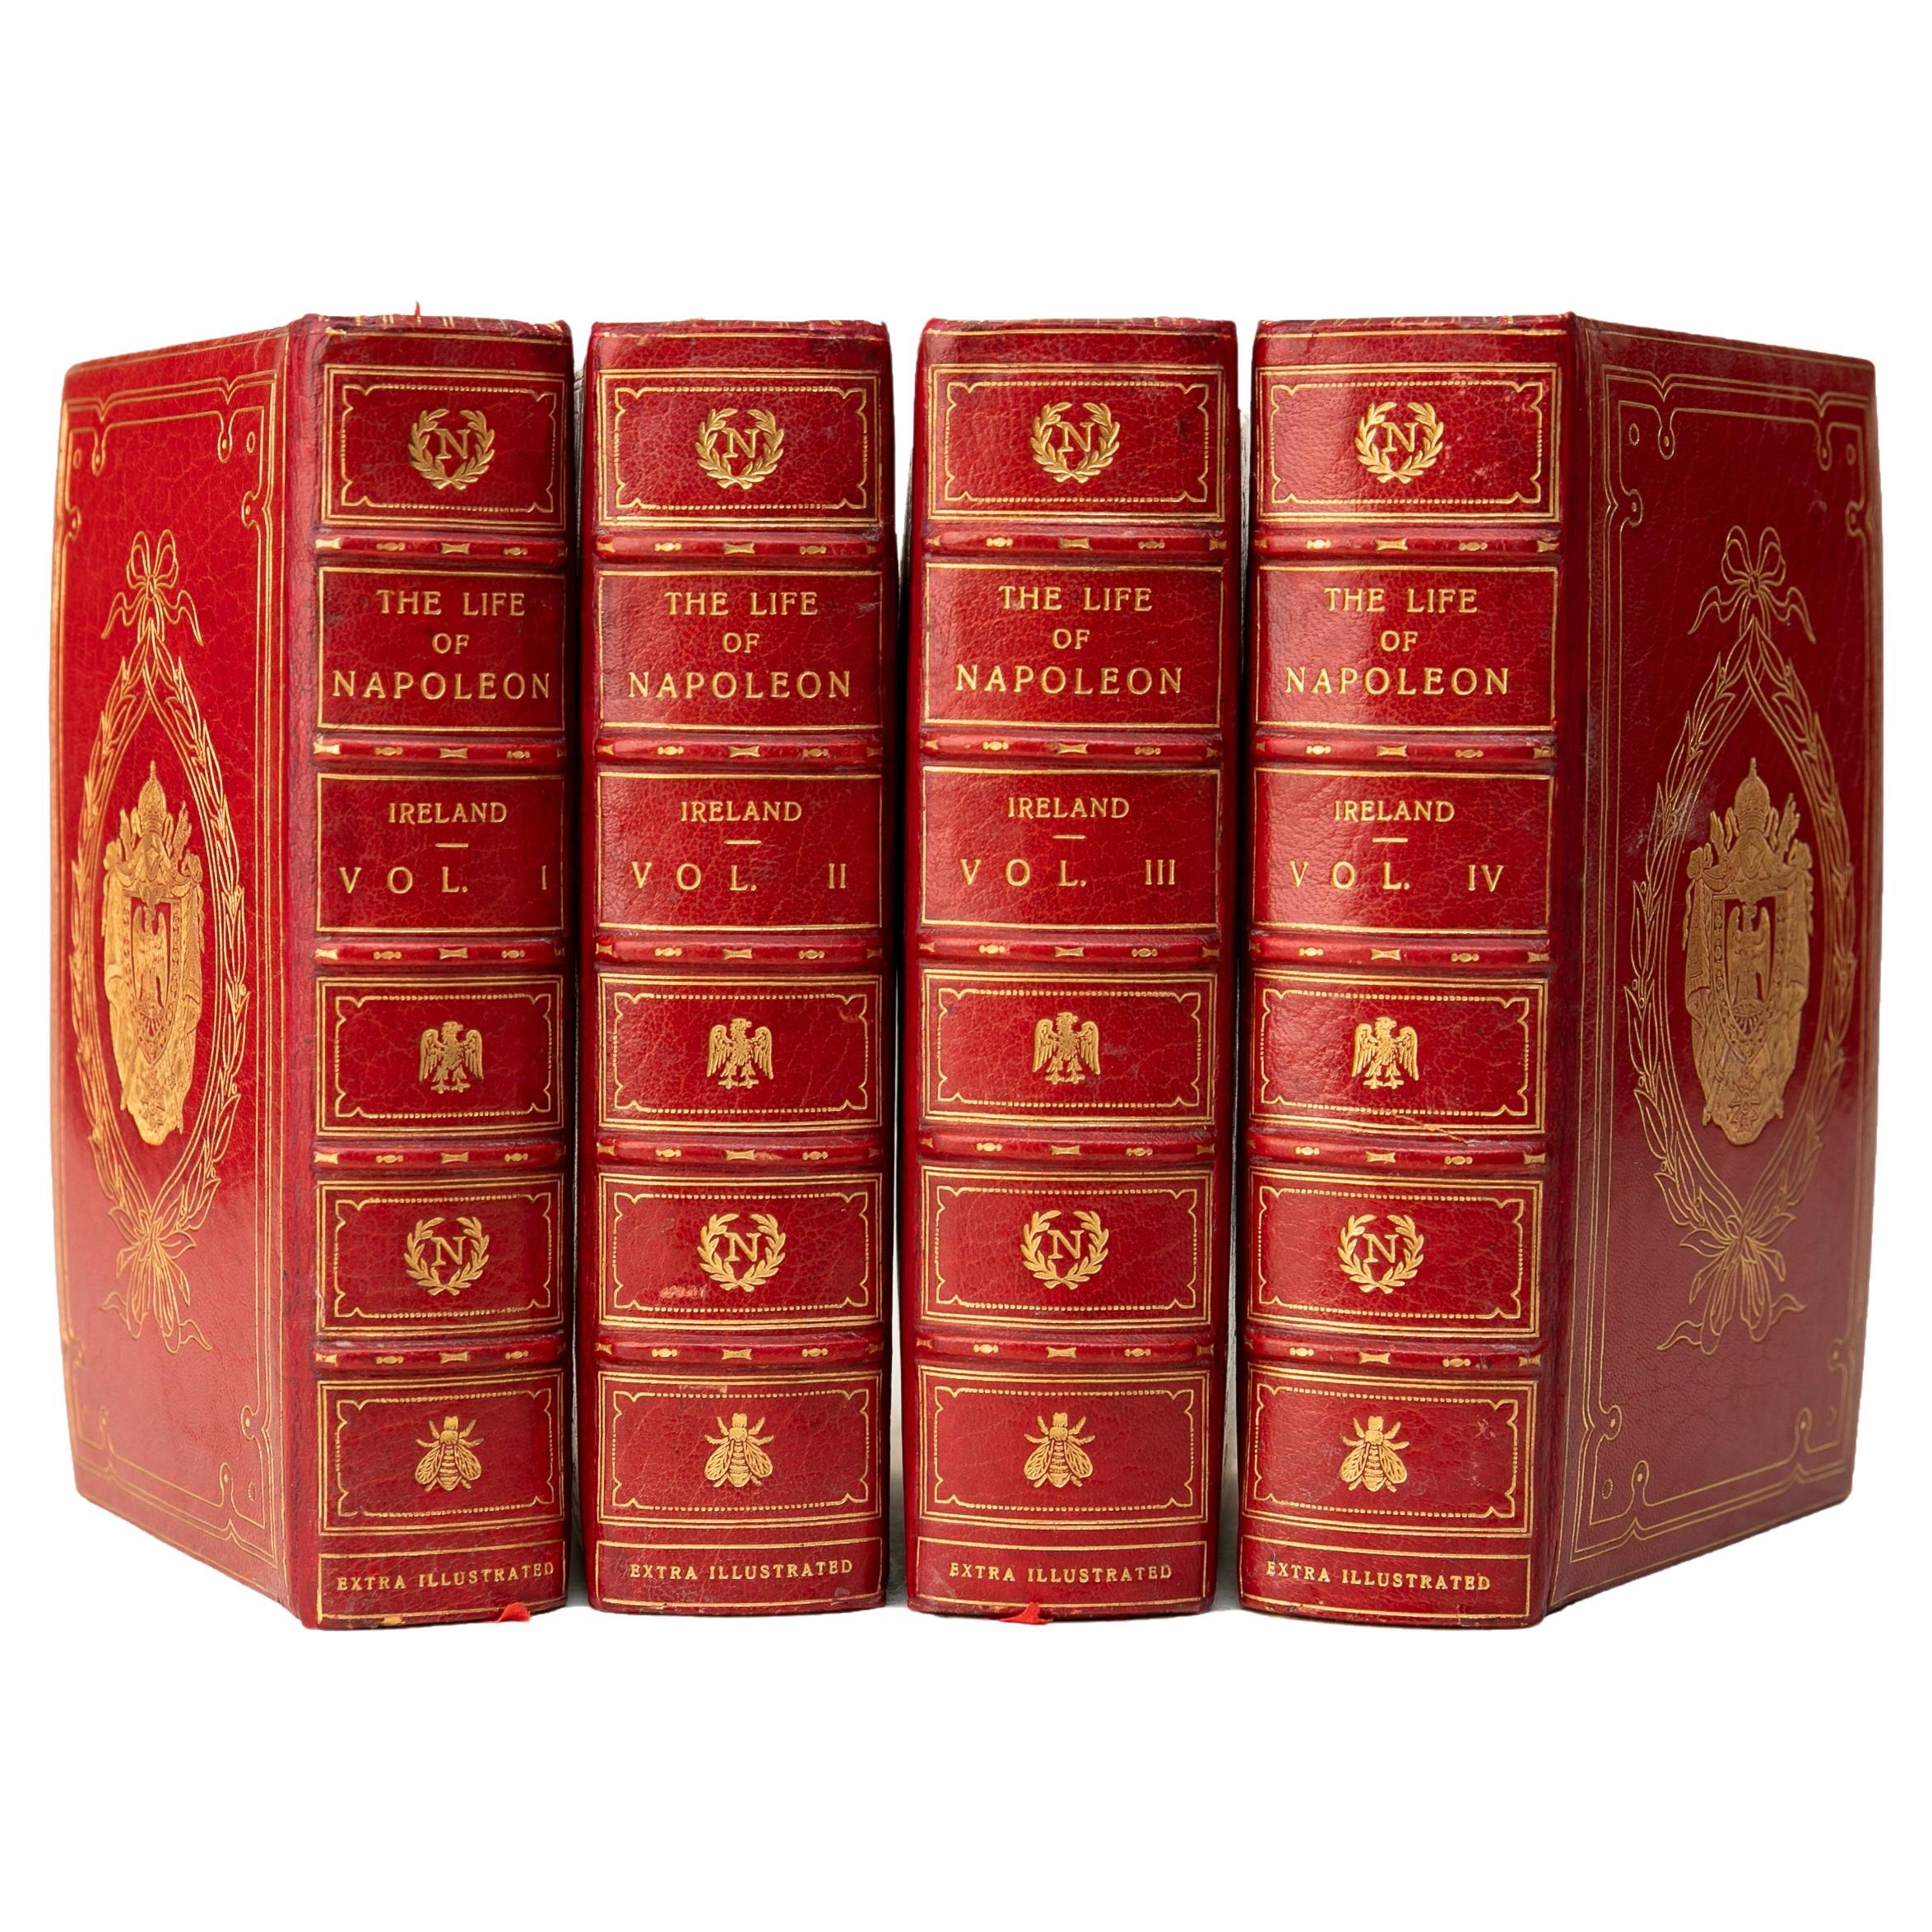 4 Bände. W.H. Irland, Leben von Napoleon Bonaparte.